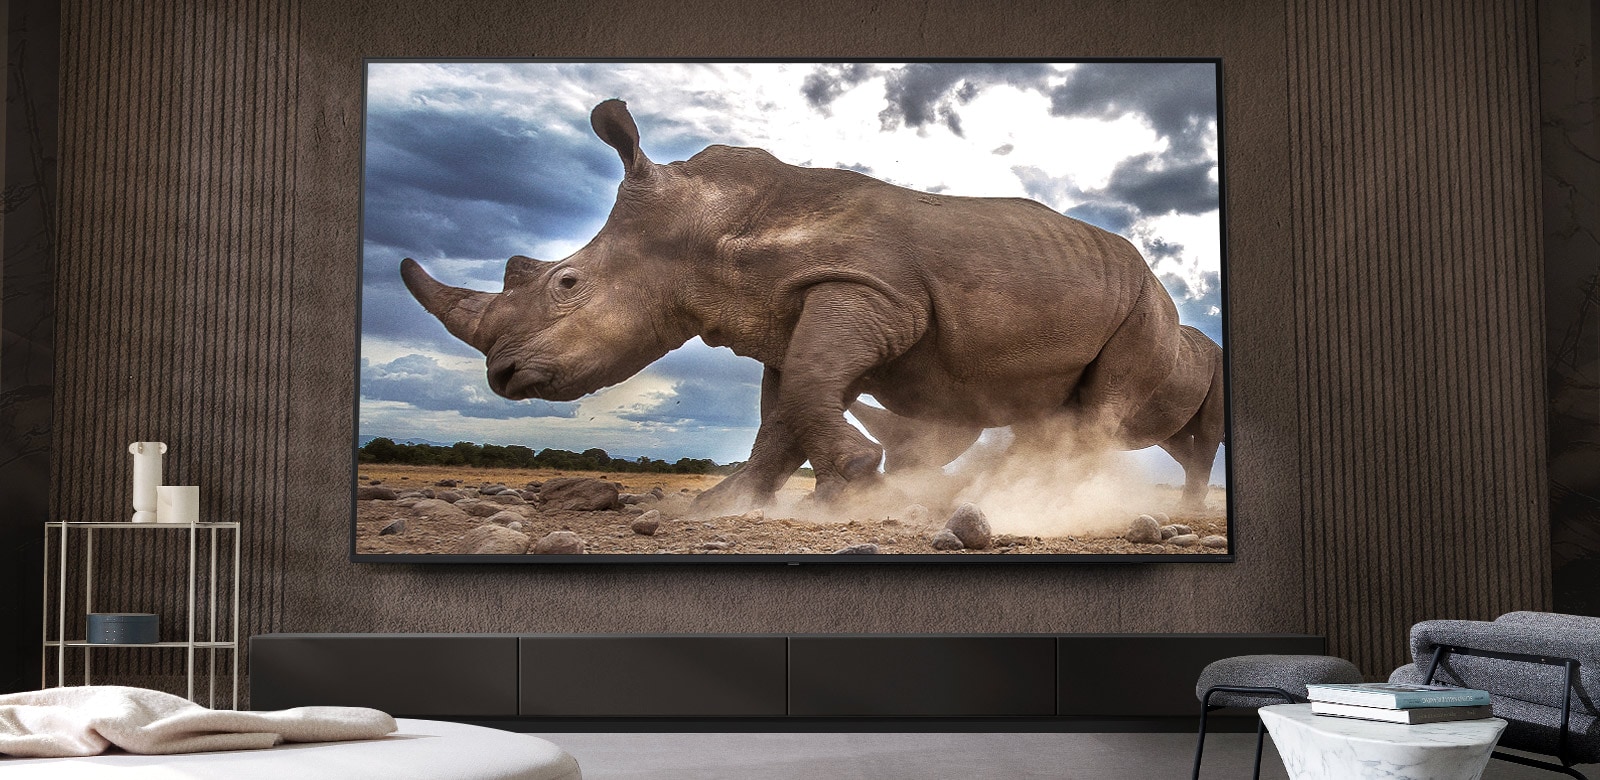 Un rinoceronte en un entorno de safari se muestra en un televisor LG ultra grande, montado en la pared marrón de una sala de estar rodeada de muebles modulares de color crema.